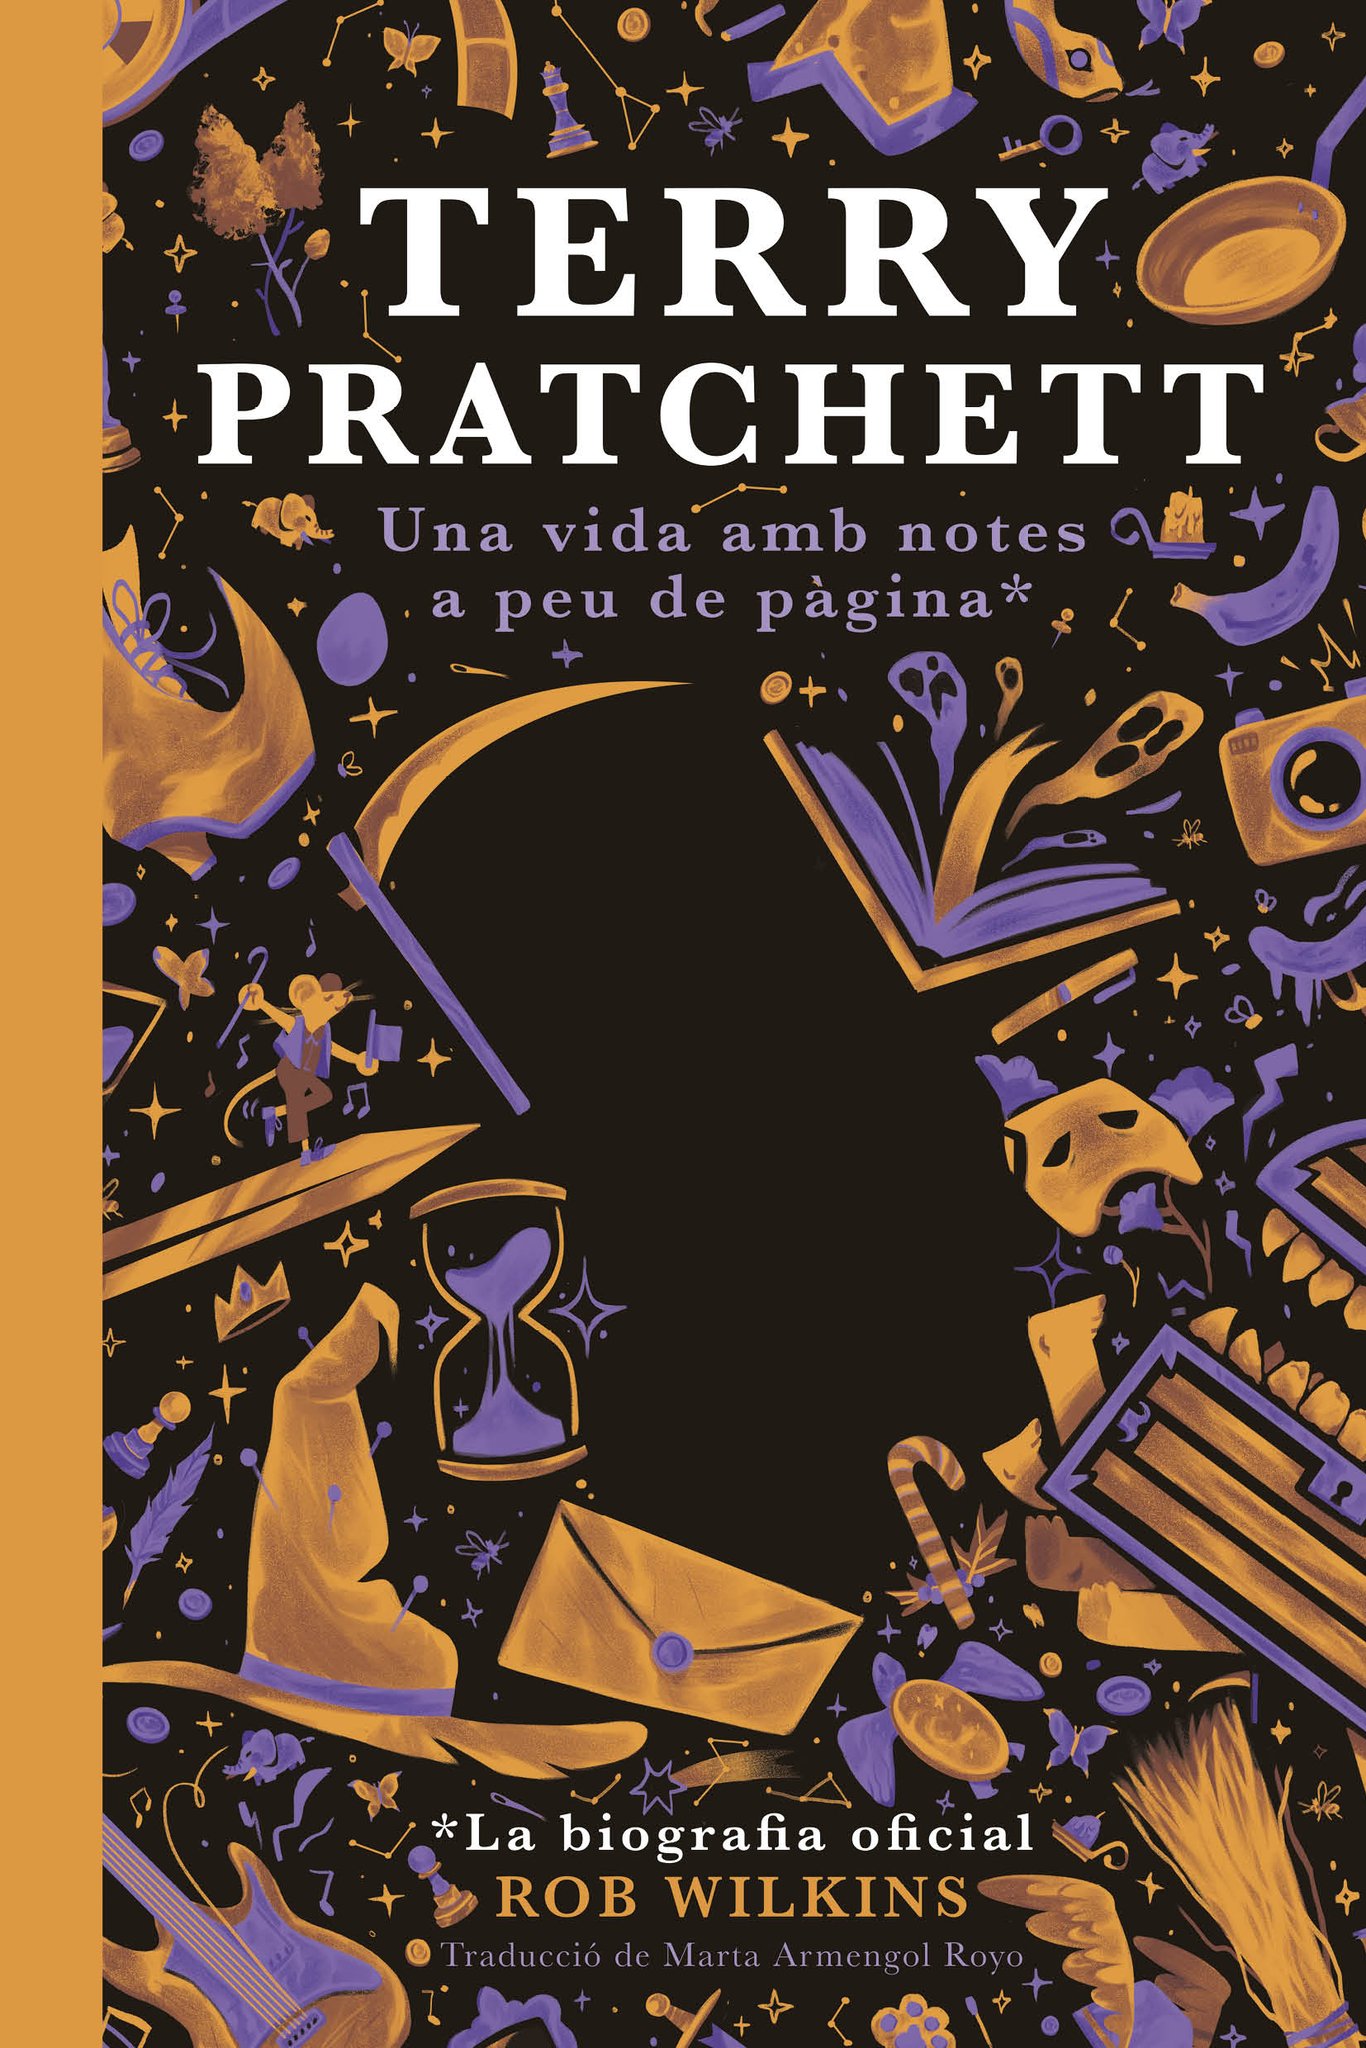 Terry Pratchett: Una vida amb notes a peu de pàgina* (Hardcover, Català language, 2022, Mai Més)